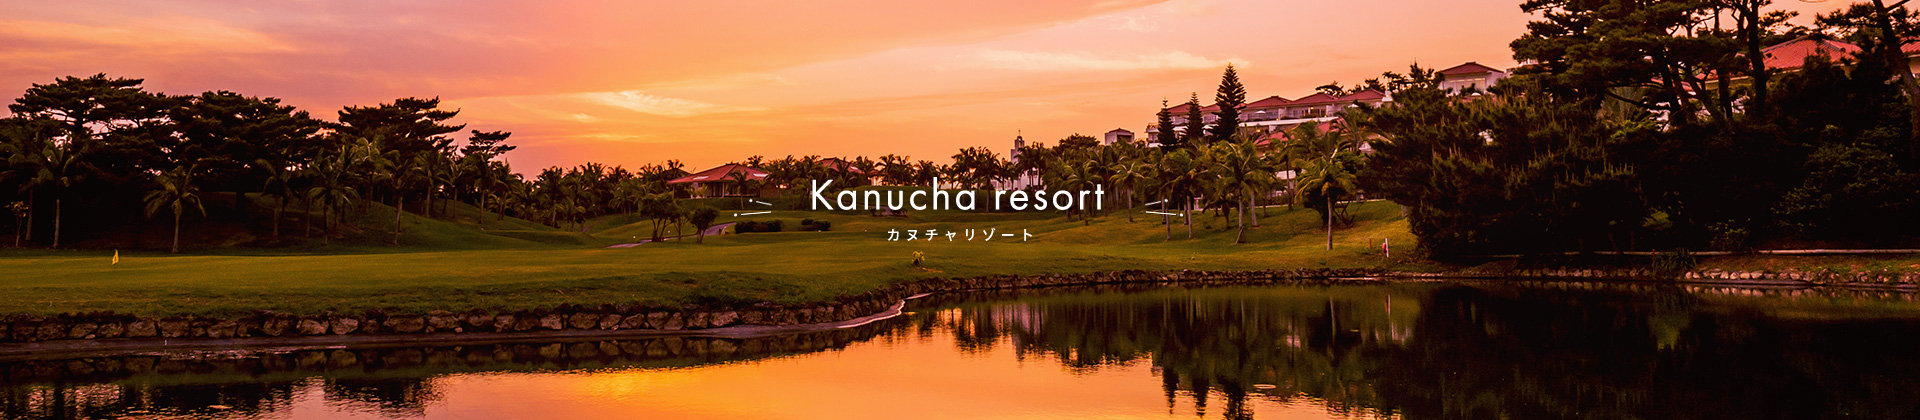 Kanucha resort カヌチャリゾート